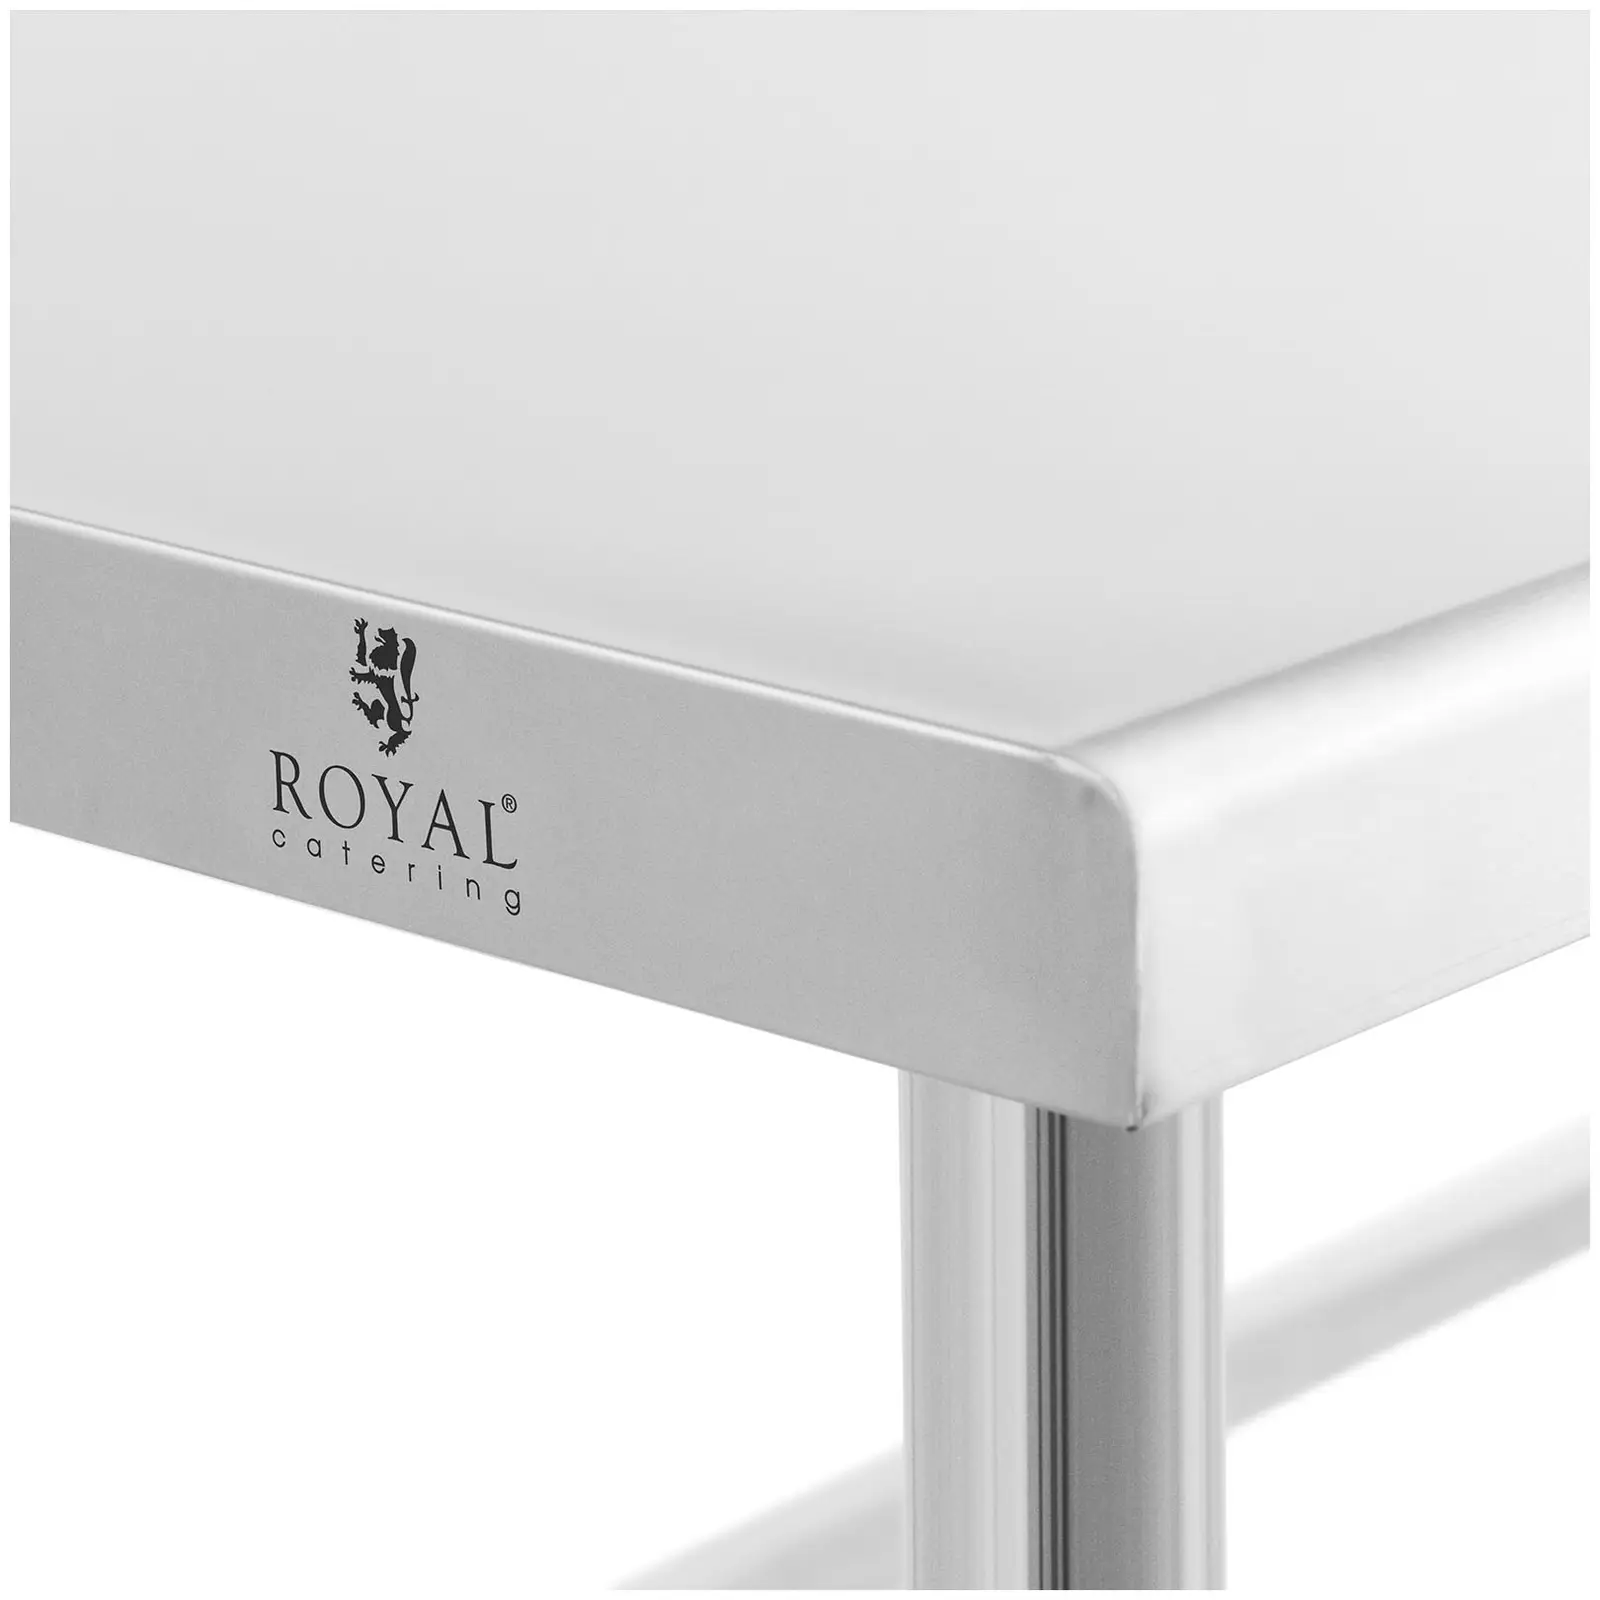 Table de travail inox - 100 x 60 cm - Capacité de 90 kg - Royal Catering